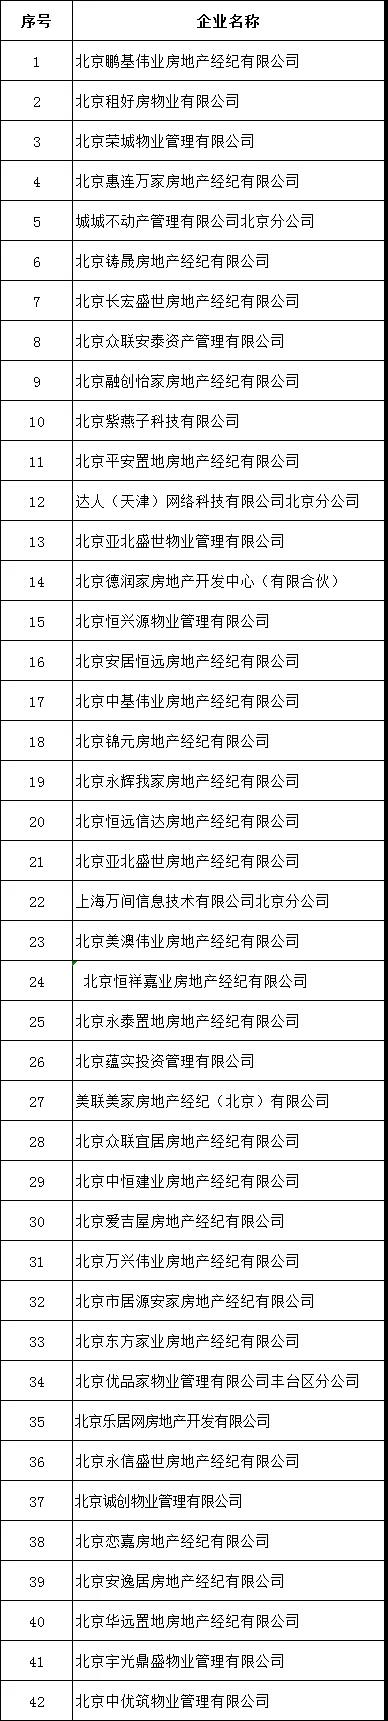 北京发布第二批租赁行业重点关注企业名单-中国网地产